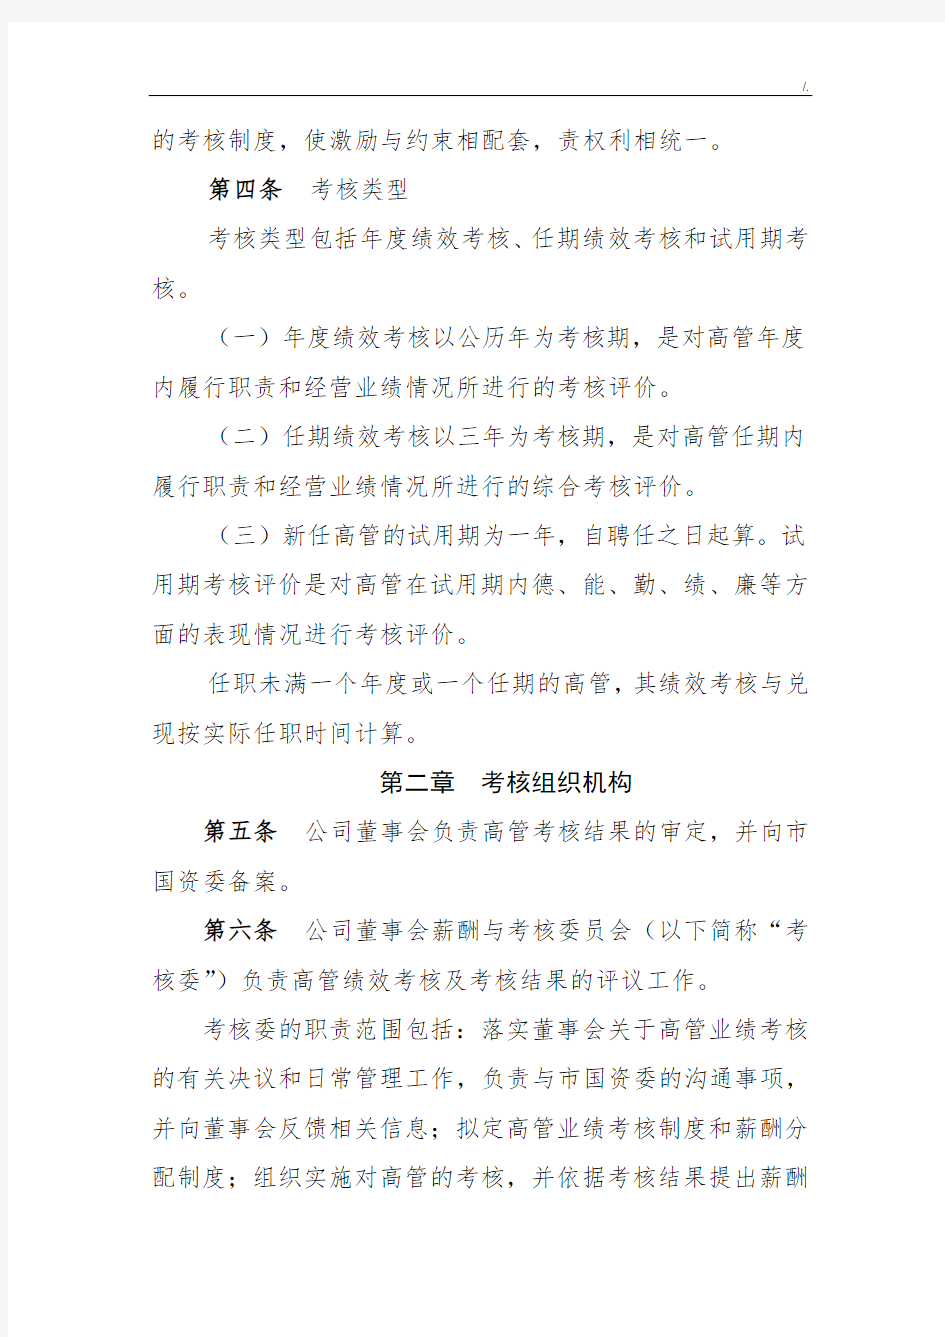 深圳市地铁集团有限集团公司高管绩效考核办法(2013年修订)